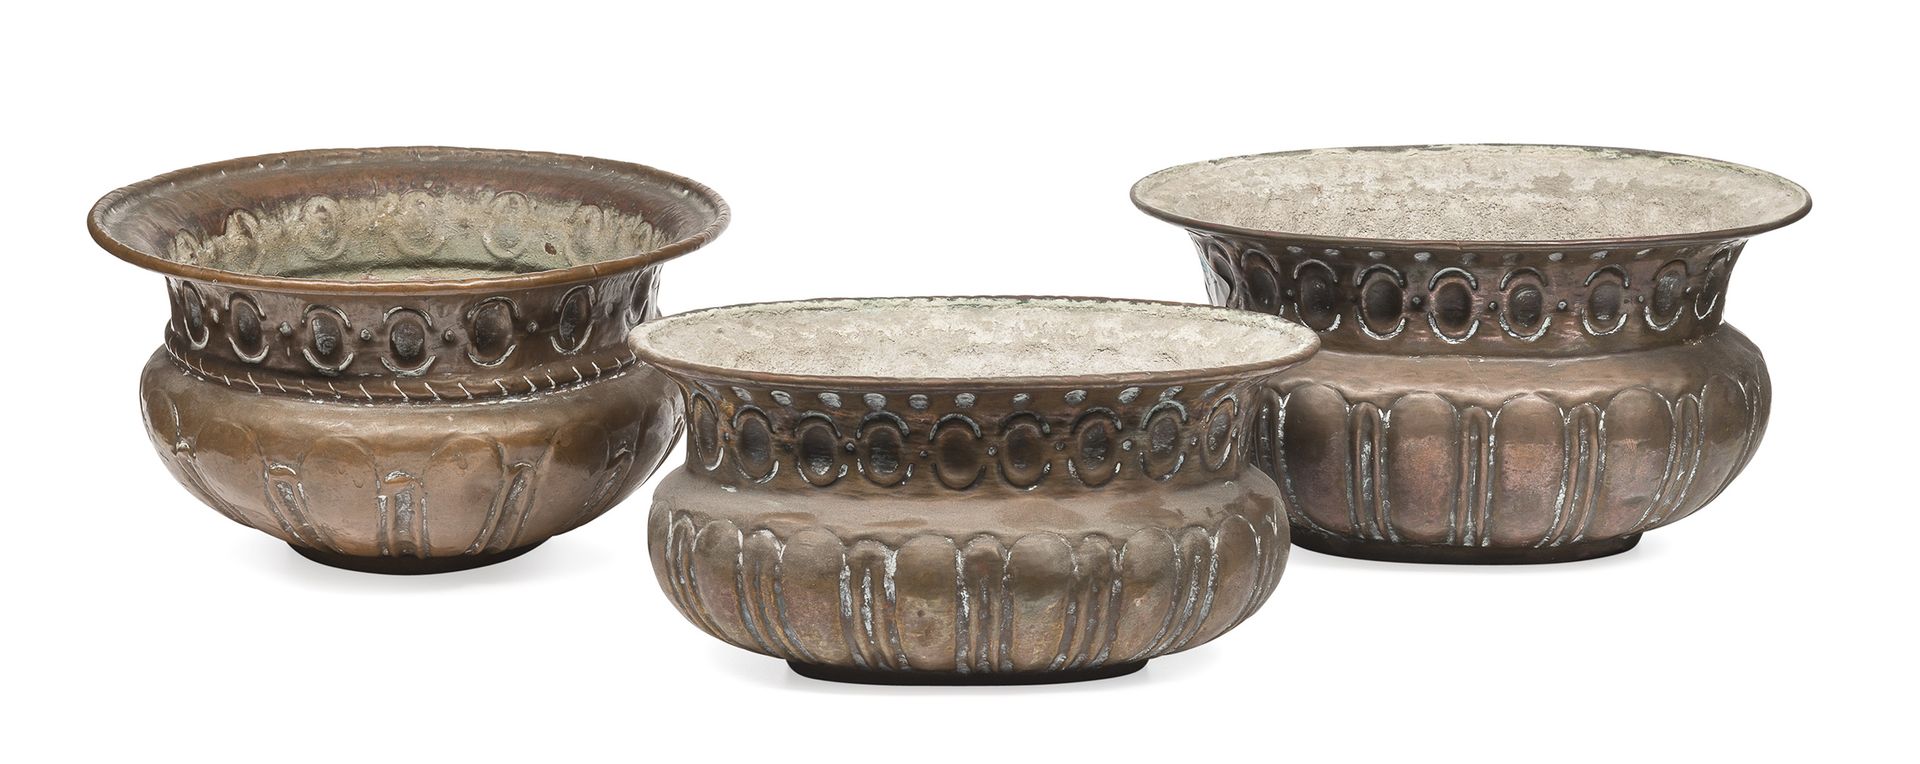 Null 三个小铜盆，18世纪末

带有压印的豆荚和润色。

最大尺寸为11 x 21厘米。